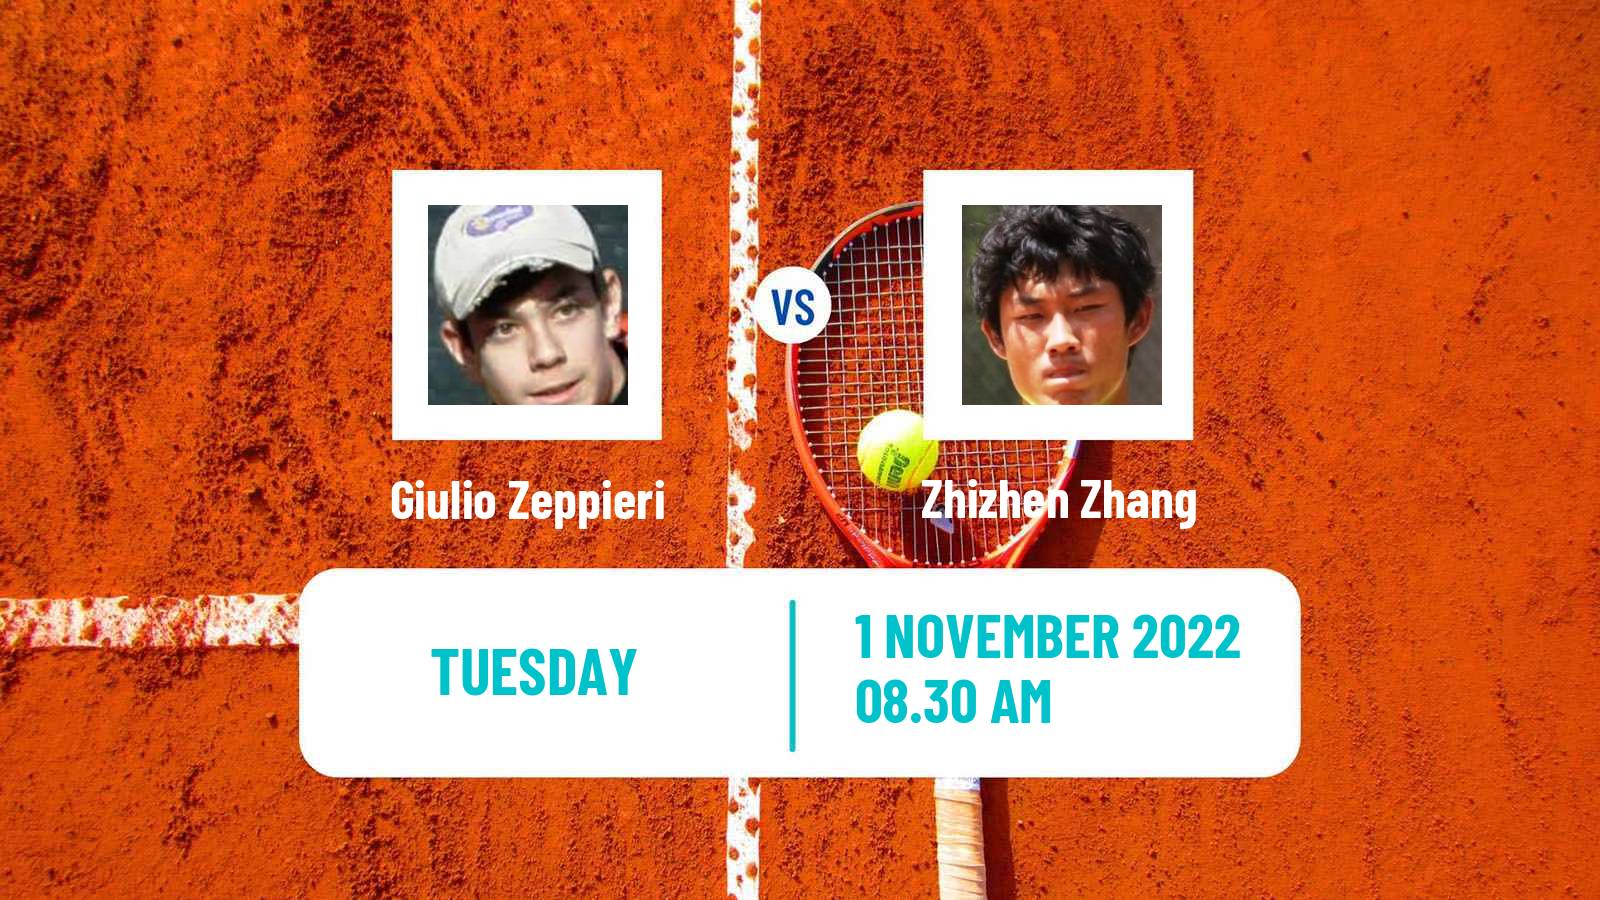 Tennis ATP Challenger Giulio Zeppieri - Zhizhen Zhang